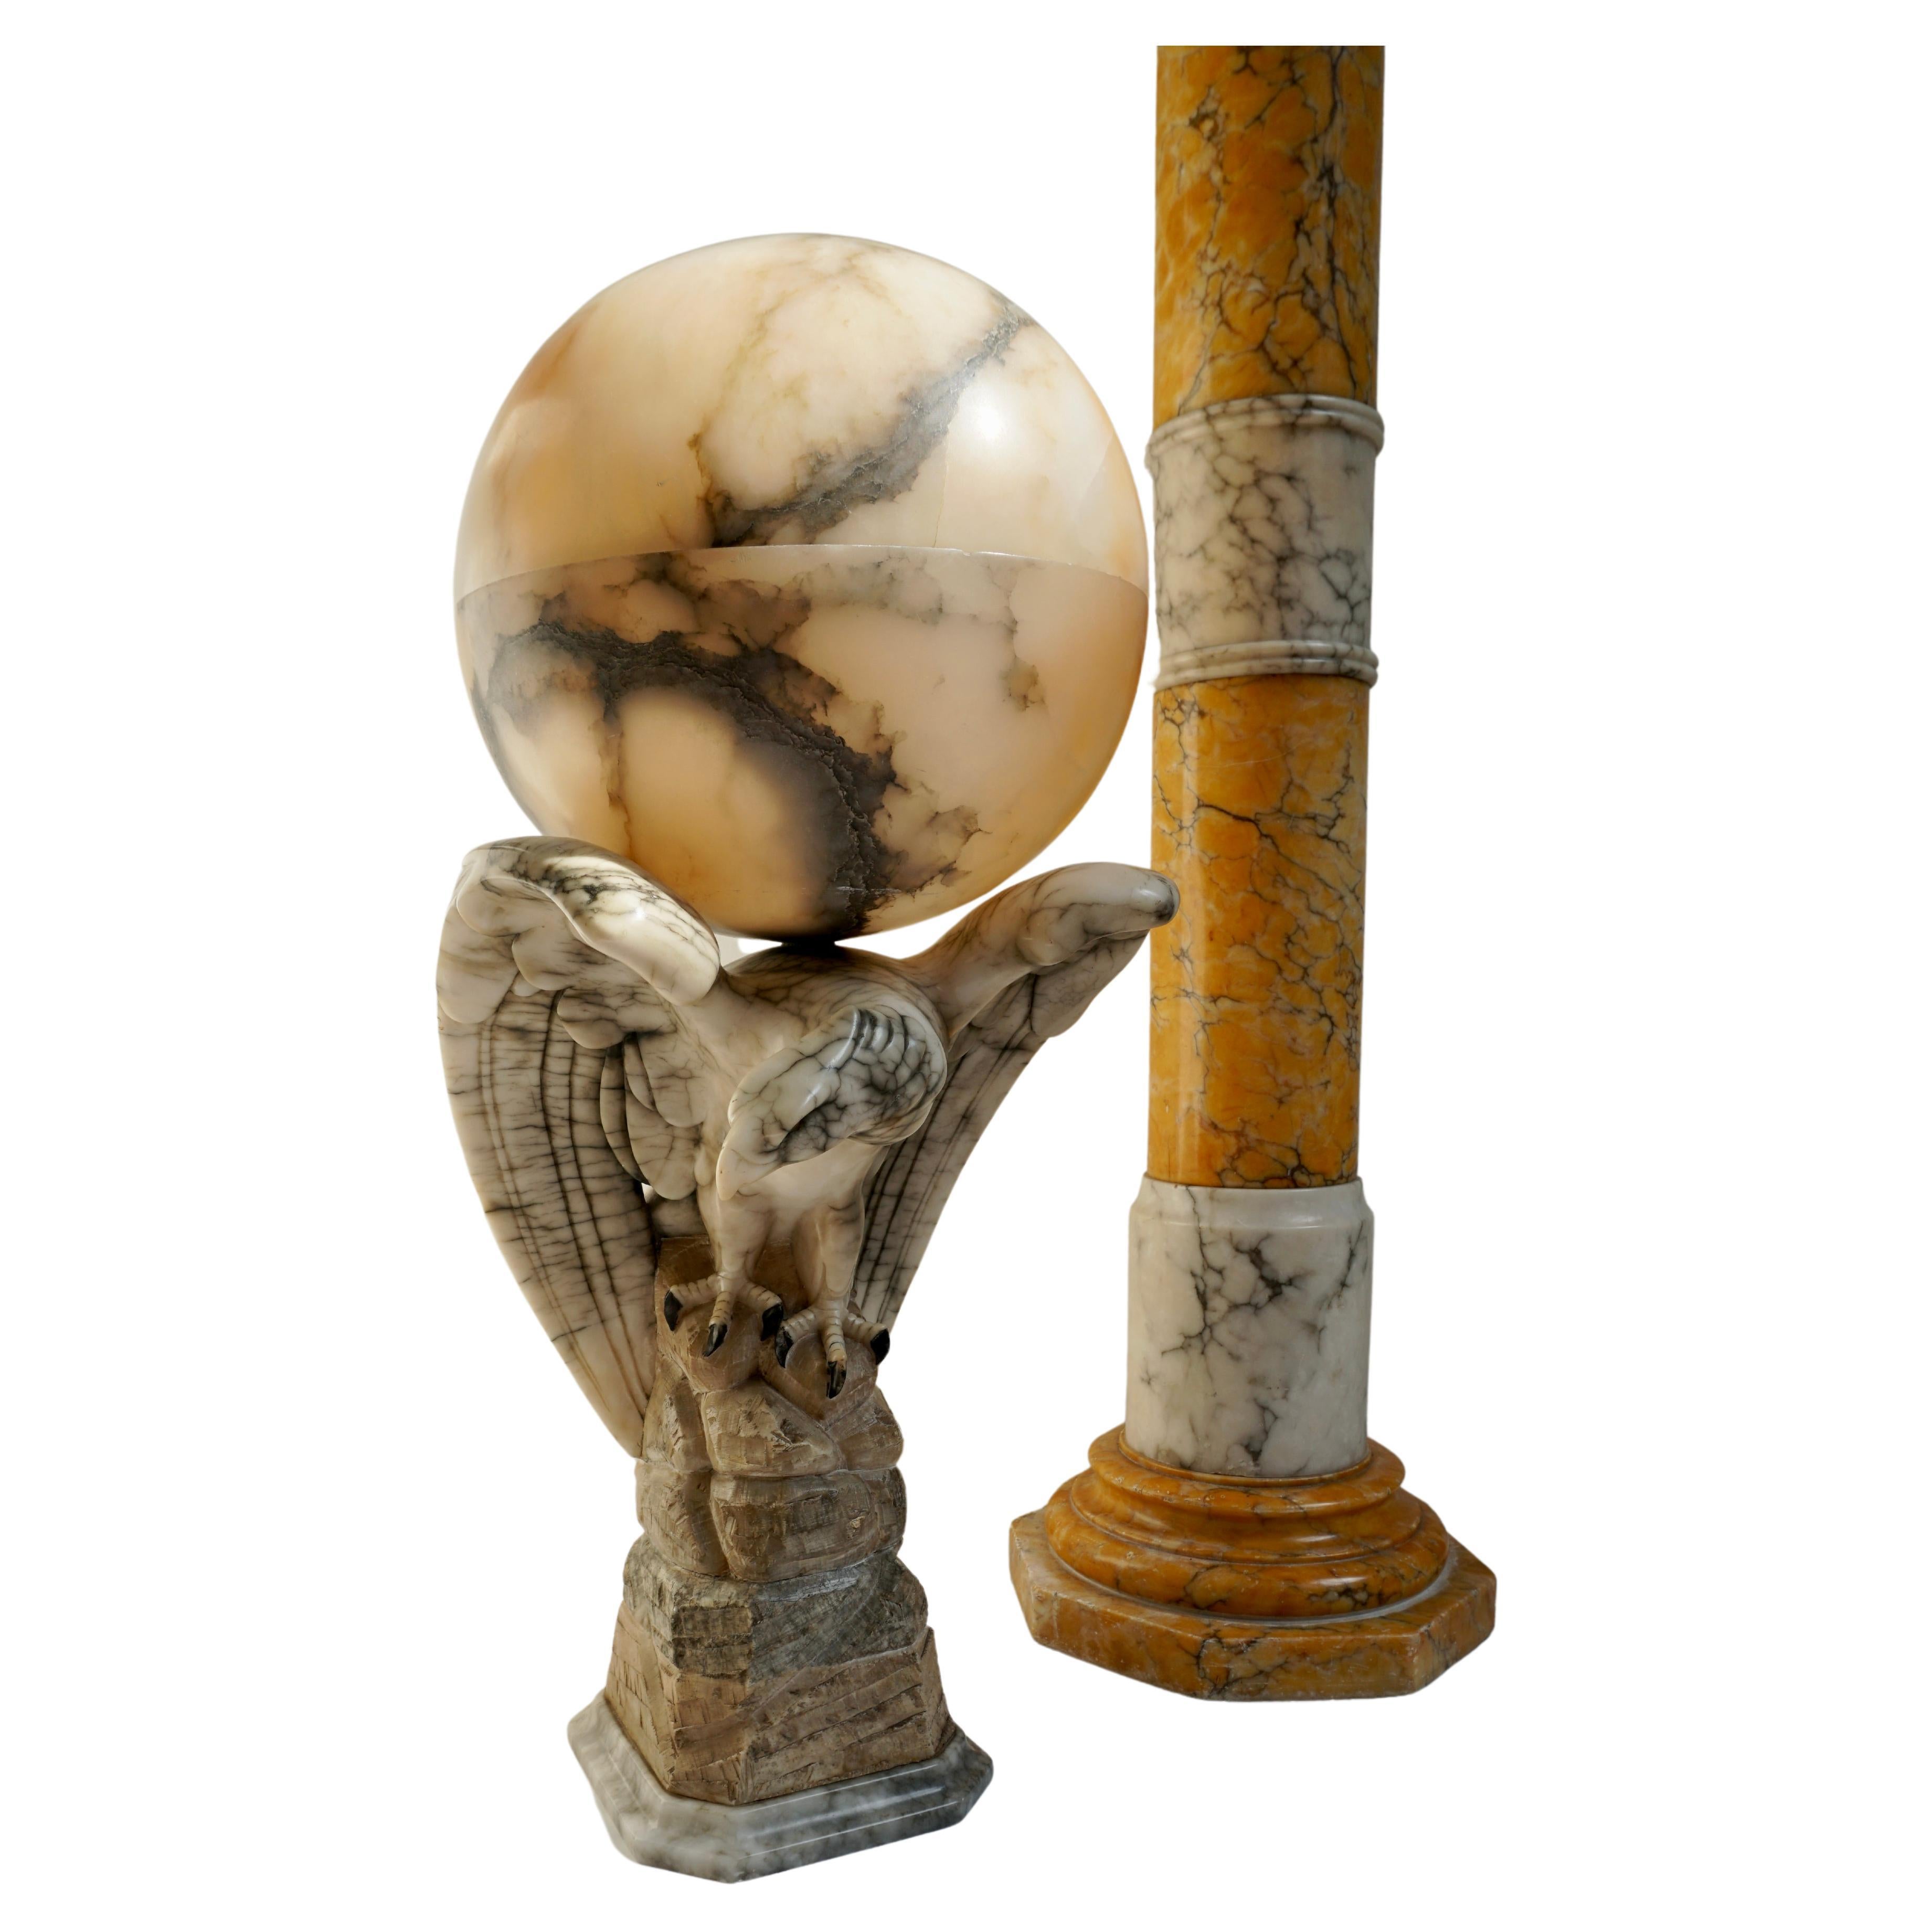 Lampe de table en forme d'aigle ailé sur une colonne, très décorative et de qualité, sculptée.

L'artiste n'a pas signé cette pièce, mais quiconque est capable de sculpter un aigle avec une posture naturelle aussi parfaite et une expression faciale